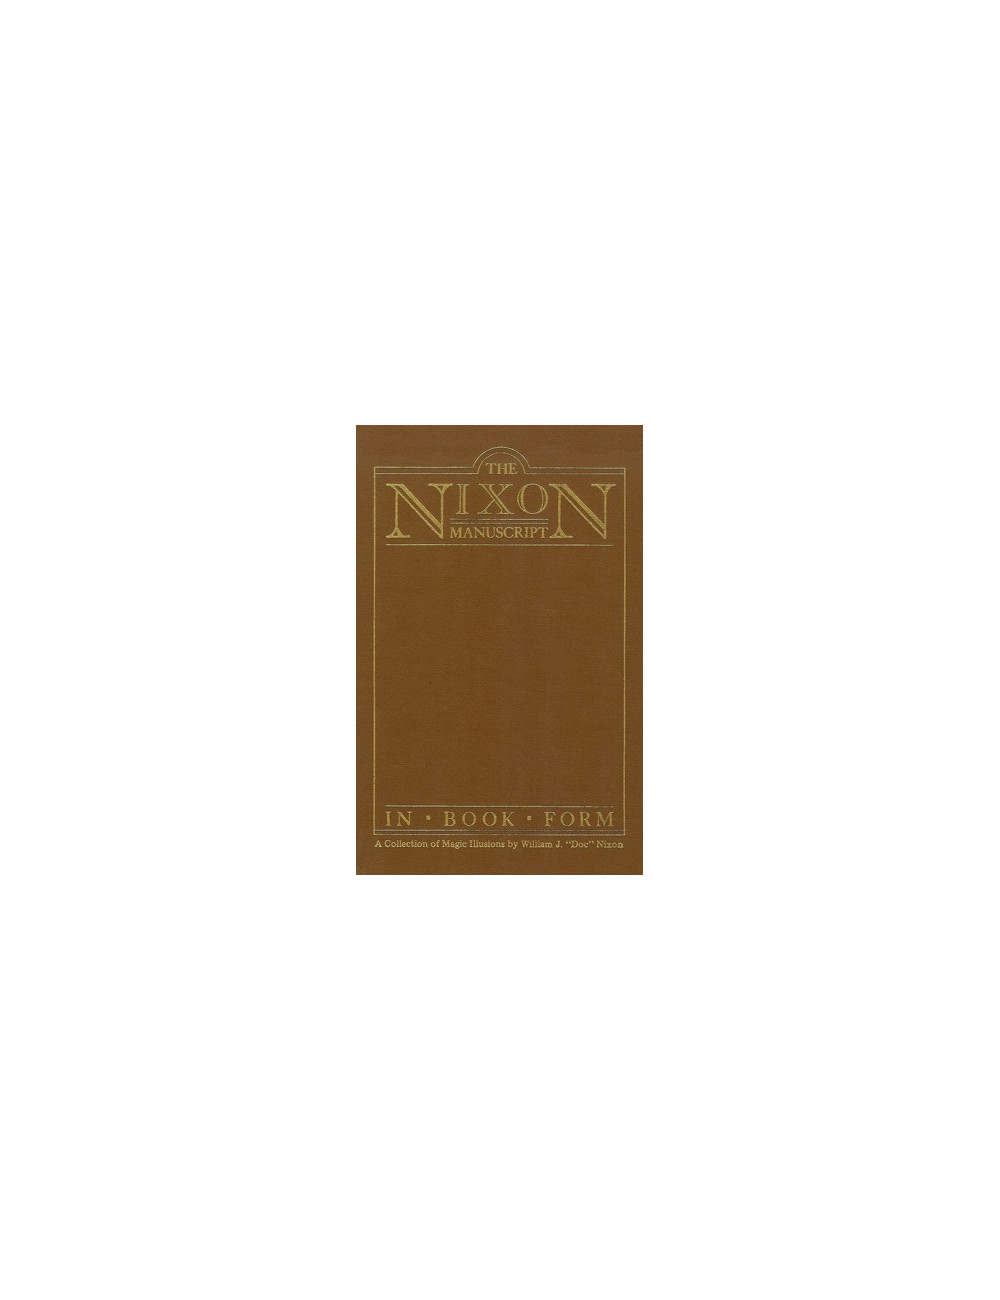 THE NIXON MANUSCRIPT IN BOOK FORM (Frederic Rickard, Glendale, California)